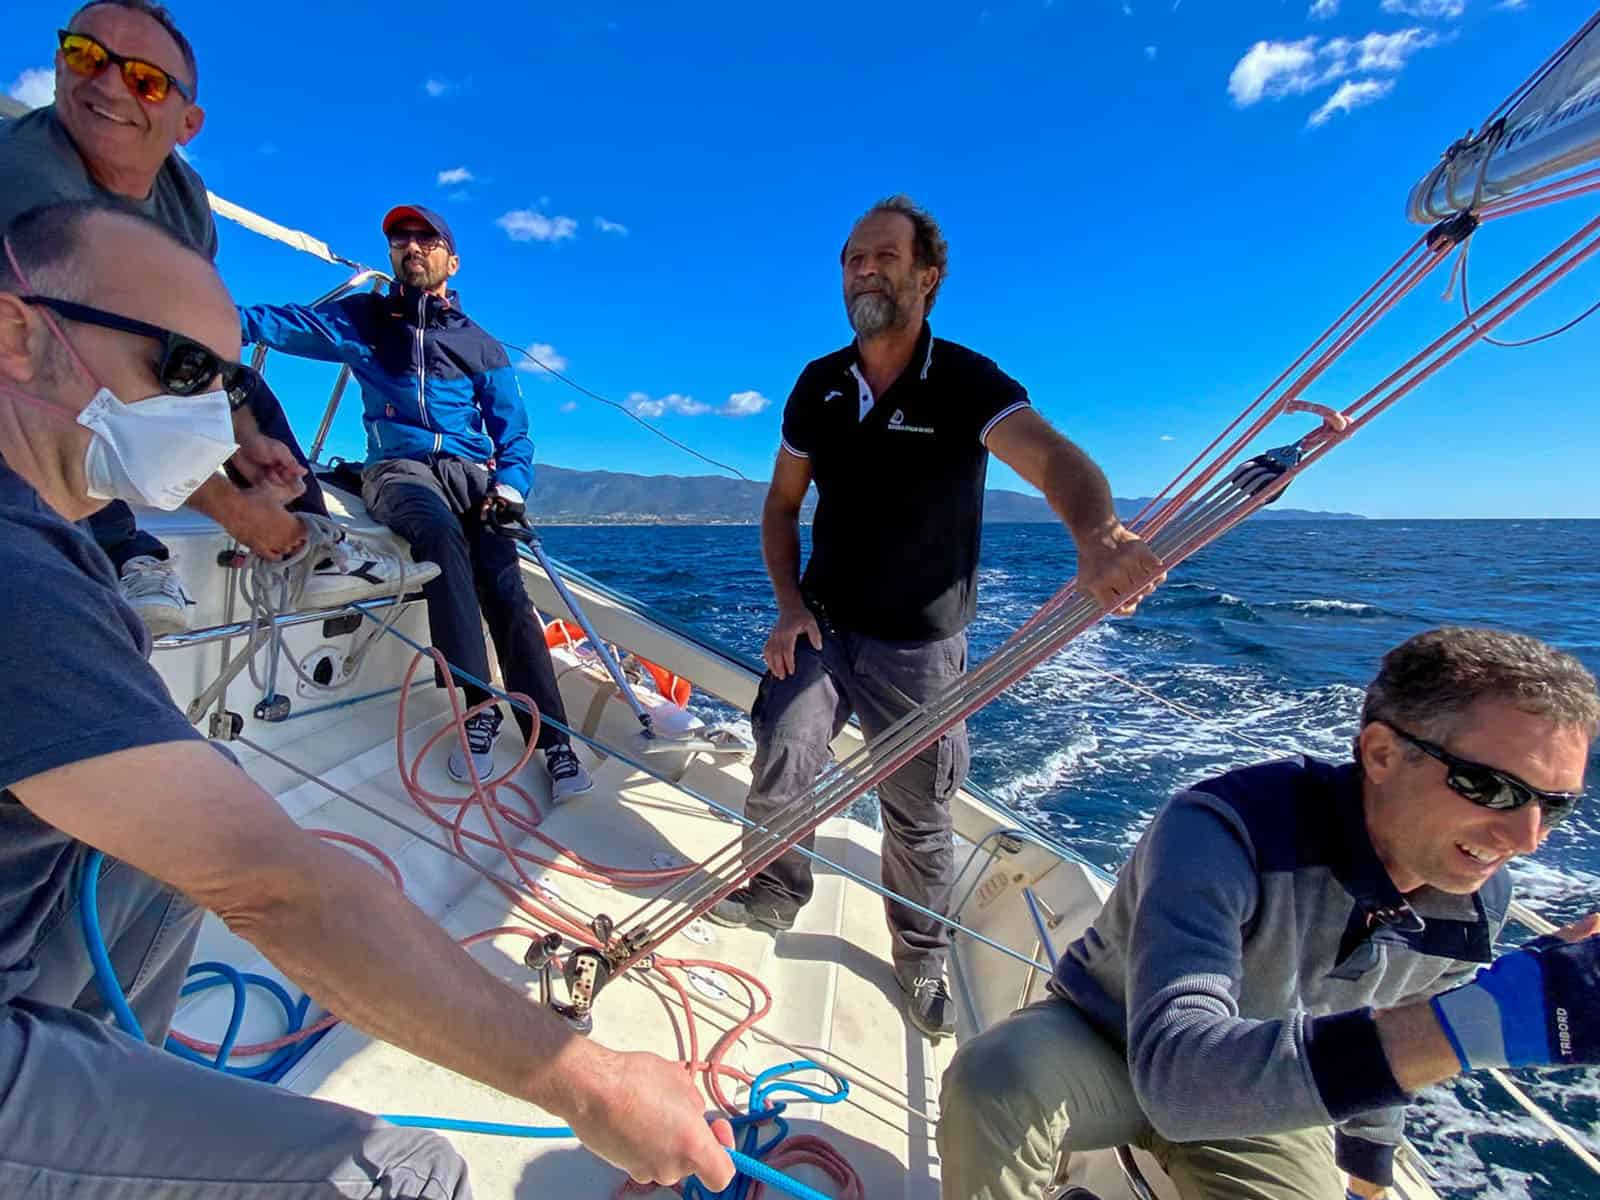 Principianti entusiasti imparano a veleggiare durante lezioni di vela in Sardegna